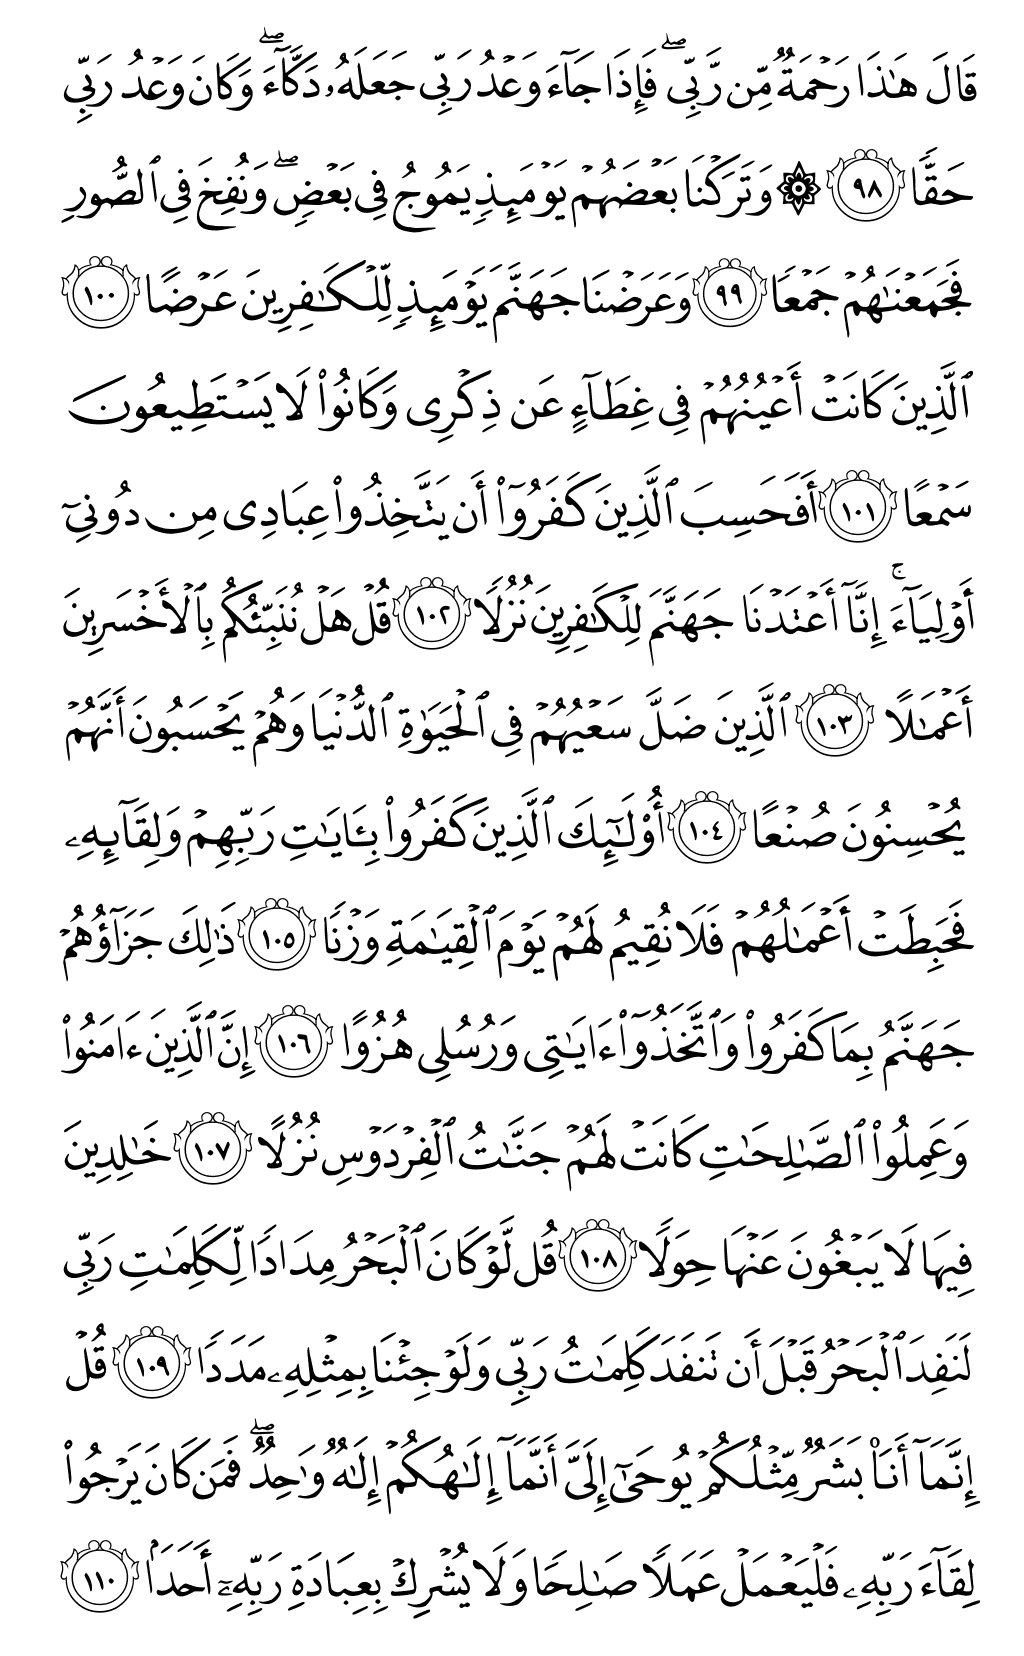 الصفحة رقم 304 من القرآن الكريم